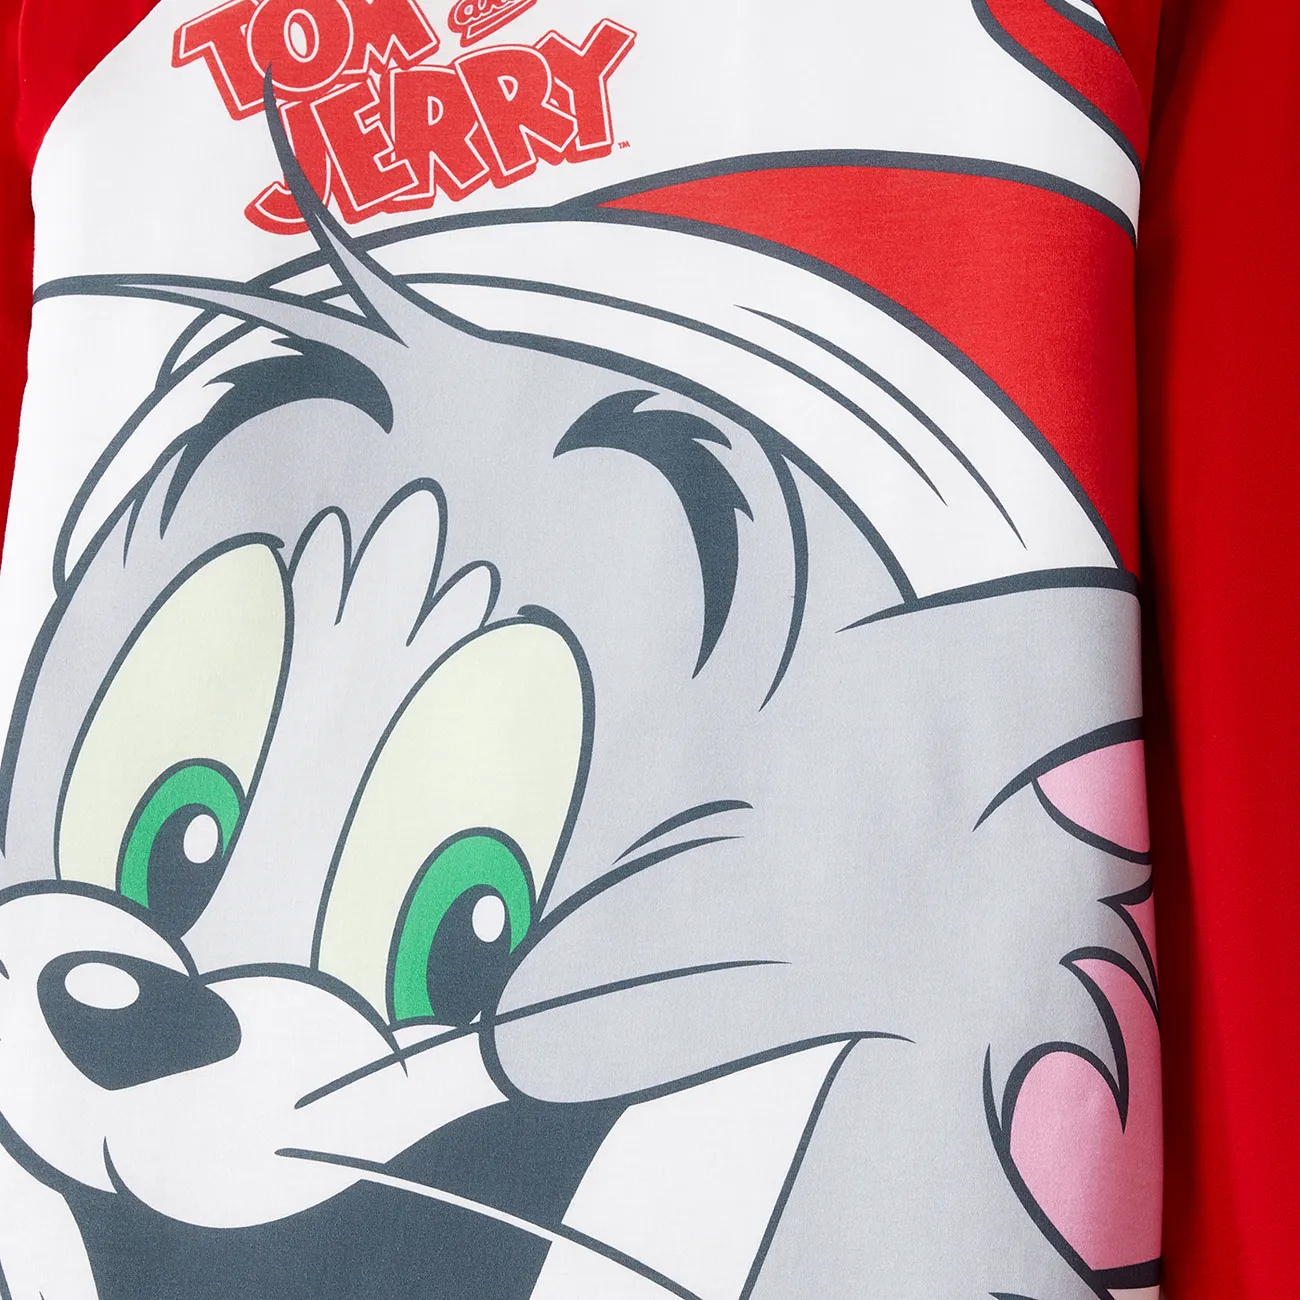 Tom and Jerry Natal Look de família Manga comprida Conjuntos de roupa para a família Pijamas (Flame Resistant) Vermelho big image 1